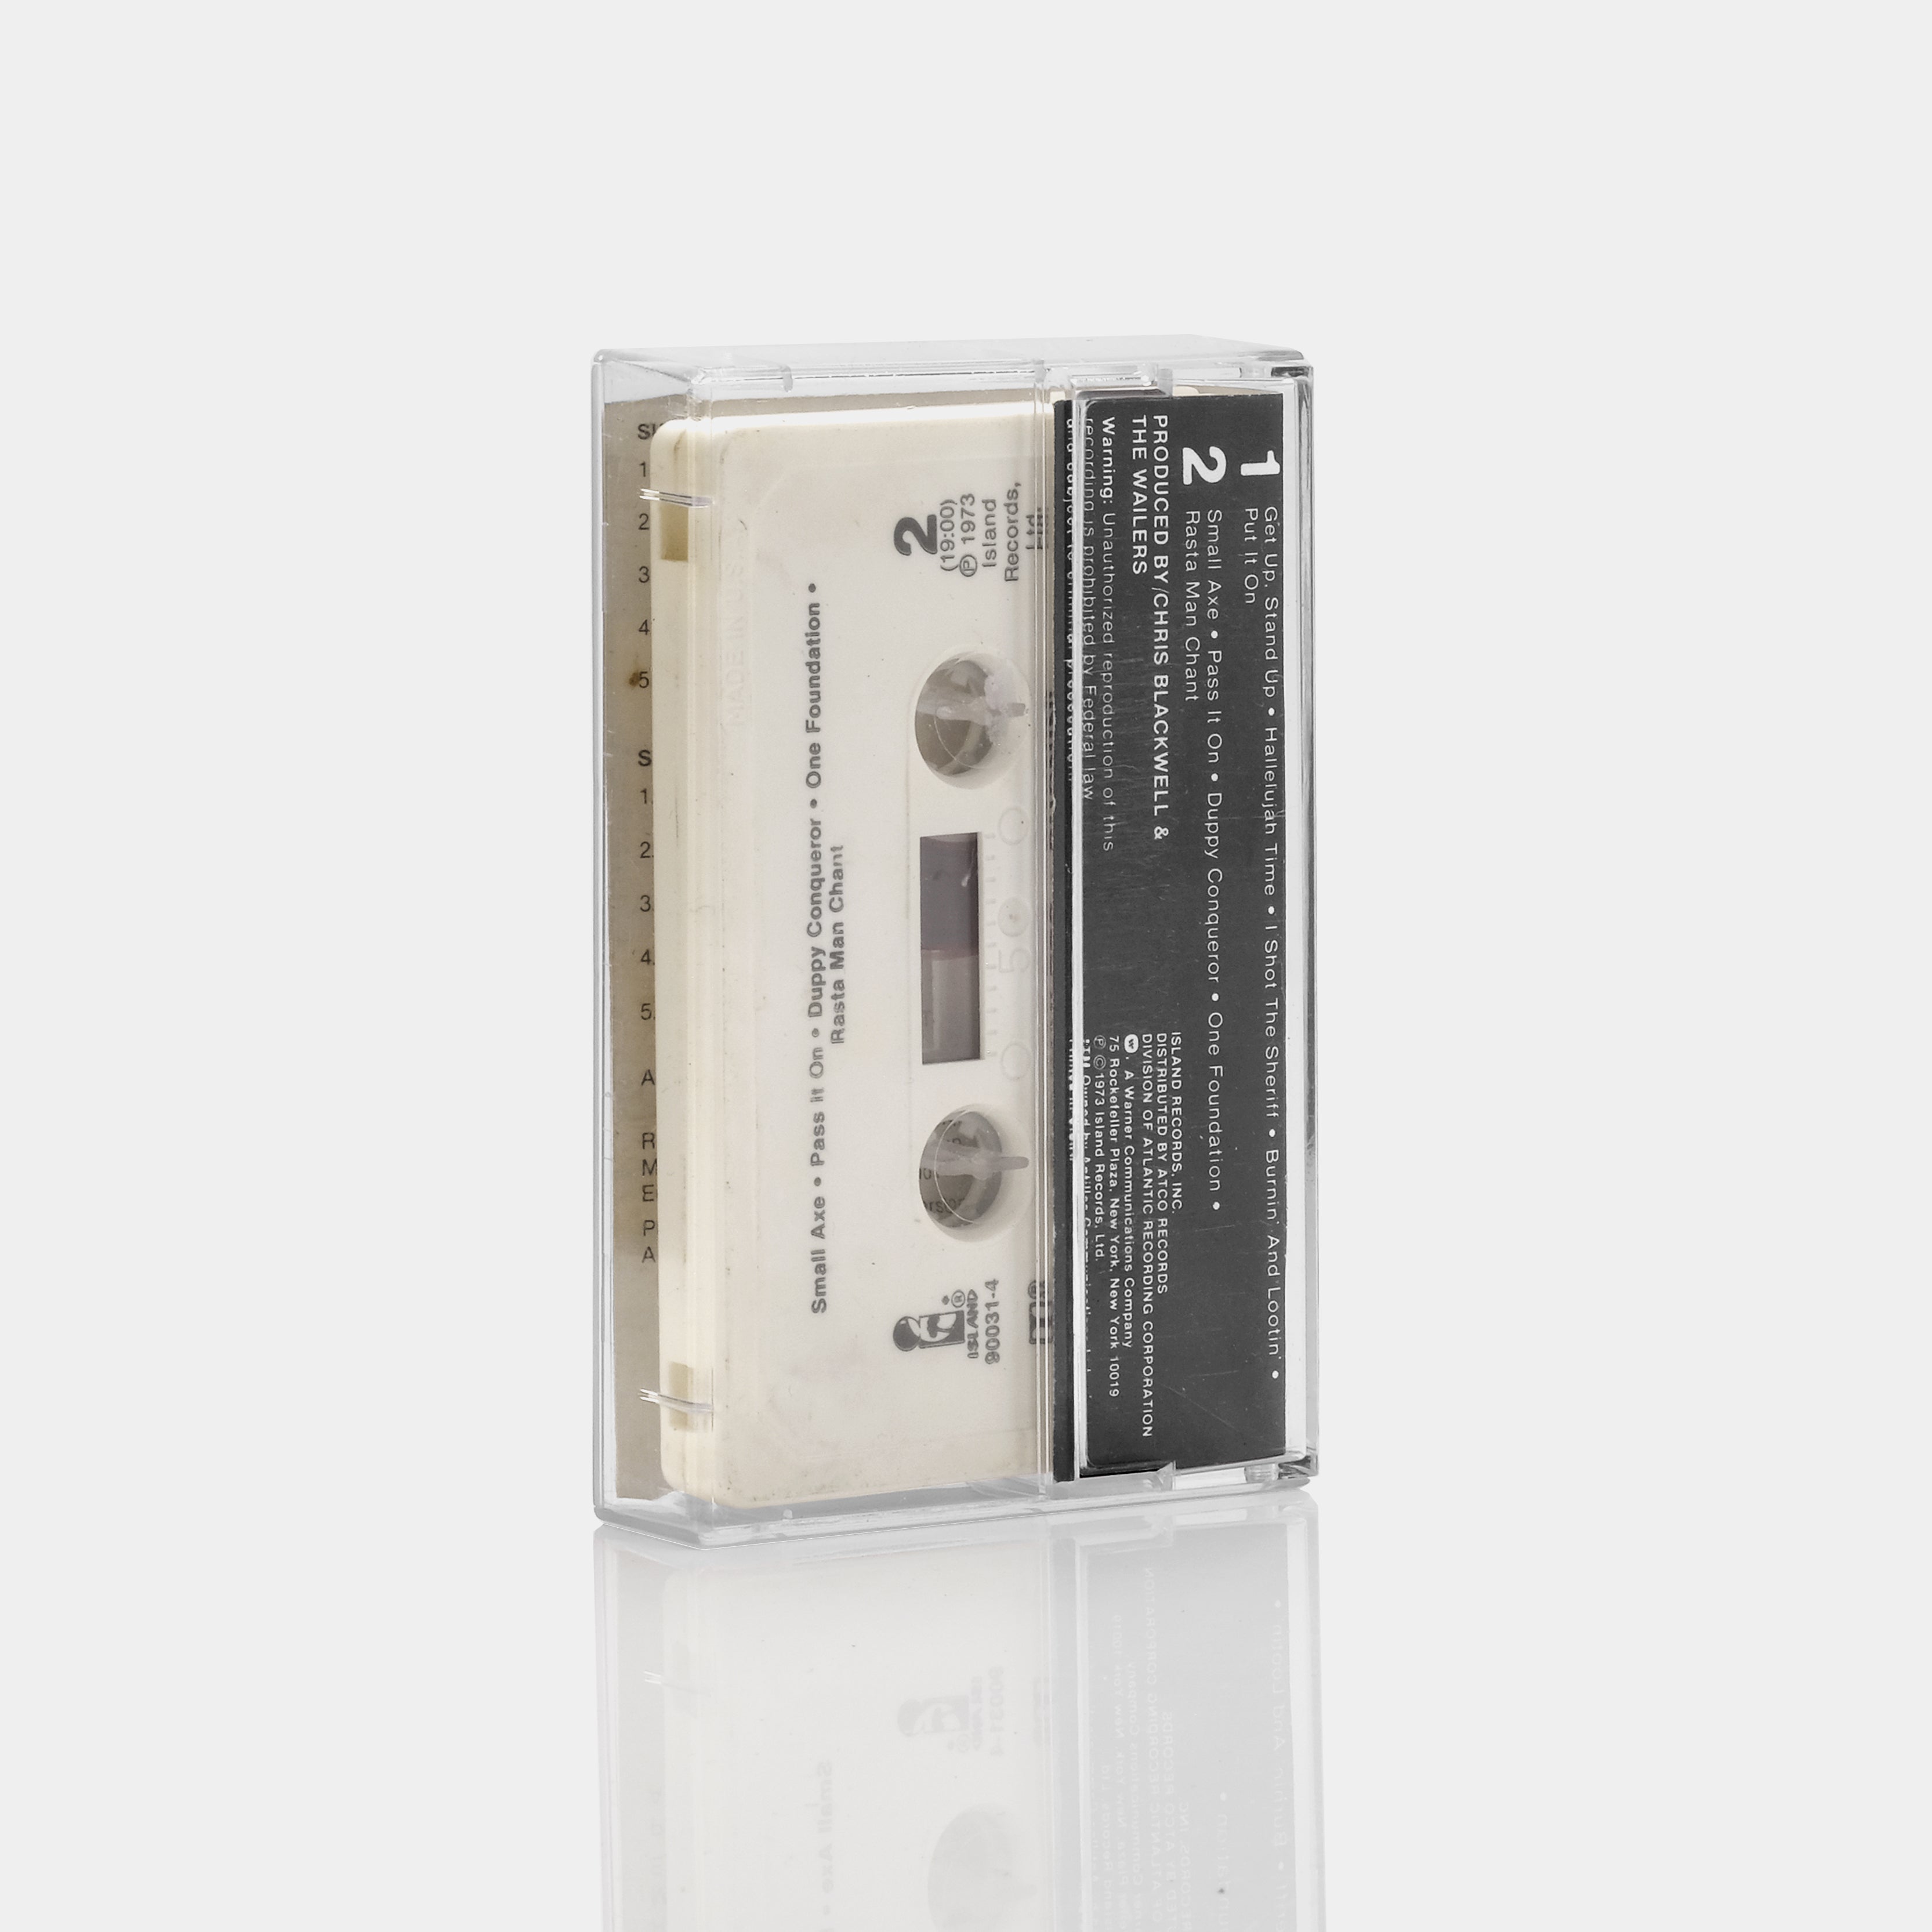 The Wailers - Burnin' Cassette Tape